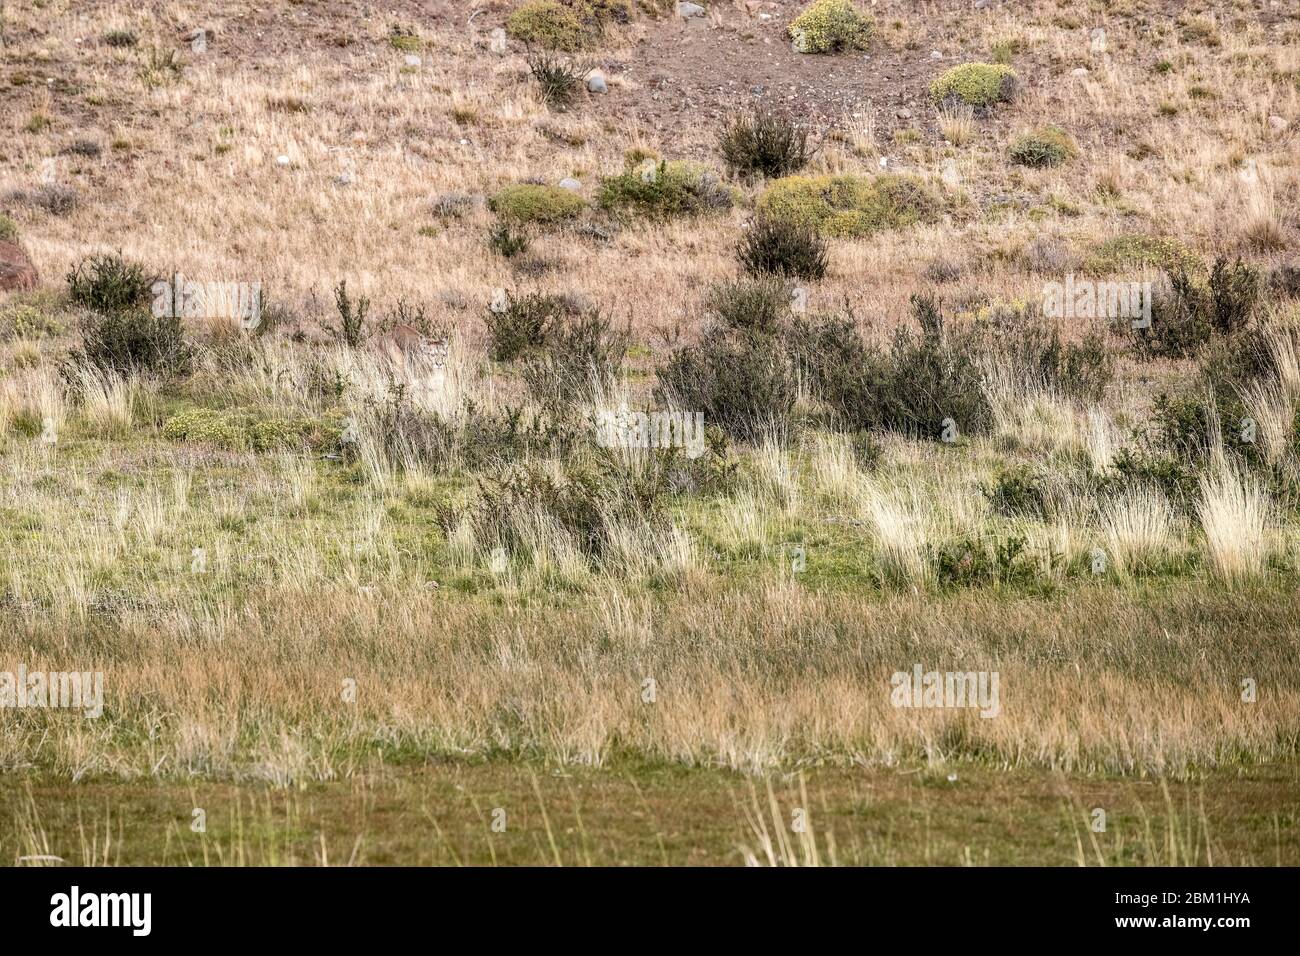 Schwer zu sehen, gut getarnt, alleinstehende Erwachsene Hündin puma in hellem Sonnenlicht durch das Gras zu Fuß. Auch bekannt als Cougar oder Berglöwe. Stockfoto